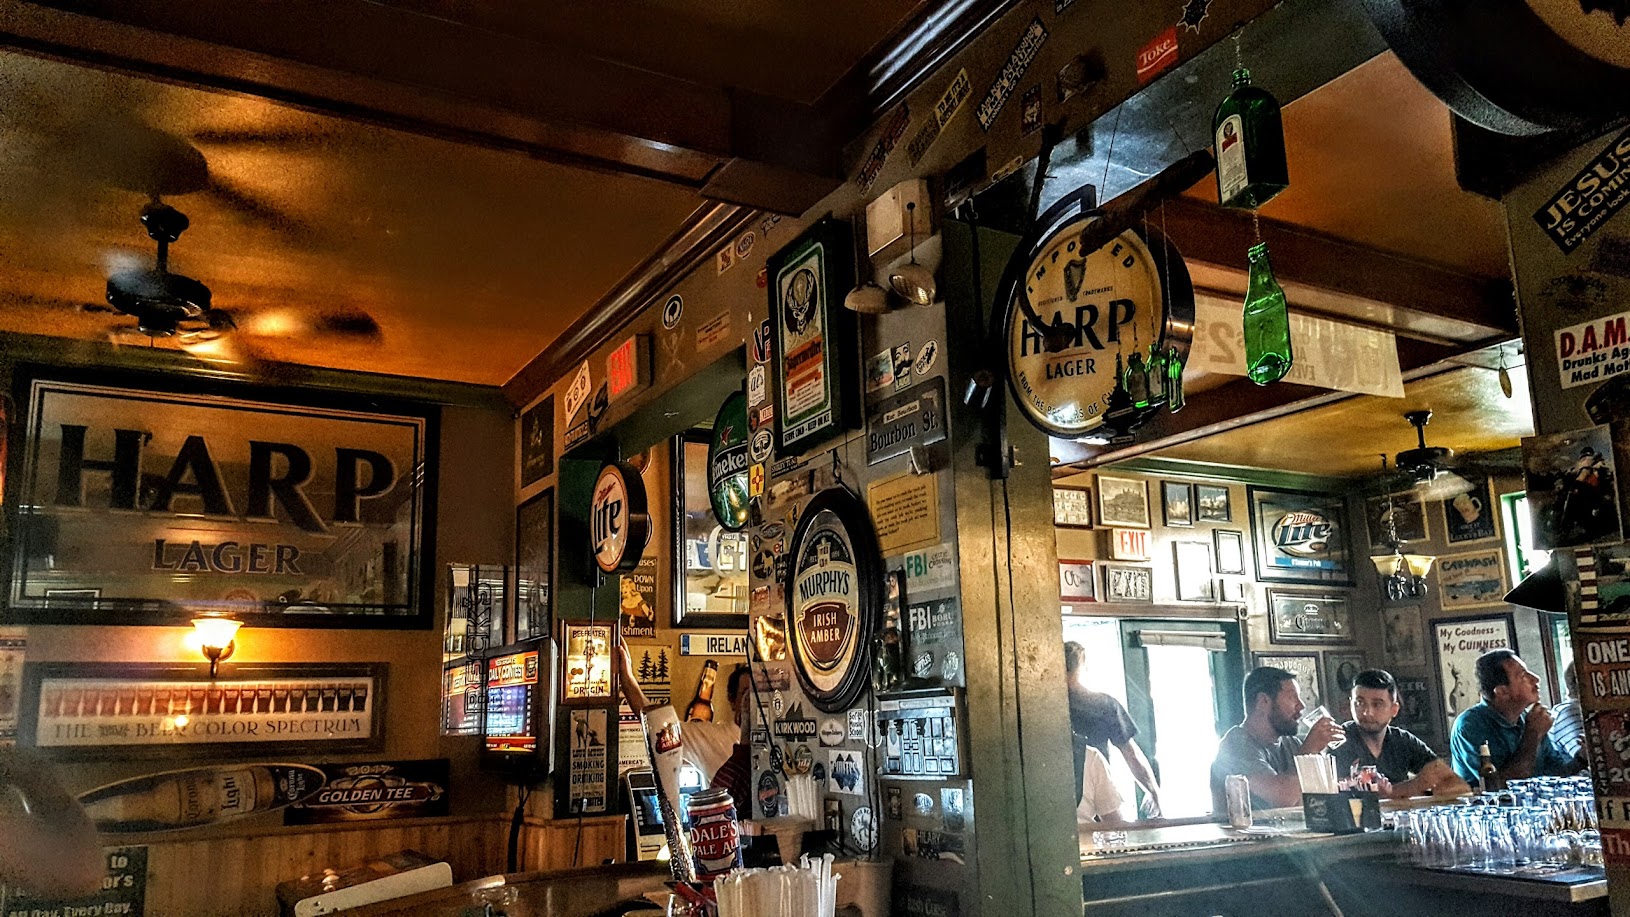 H.J. O'Connor's Pub